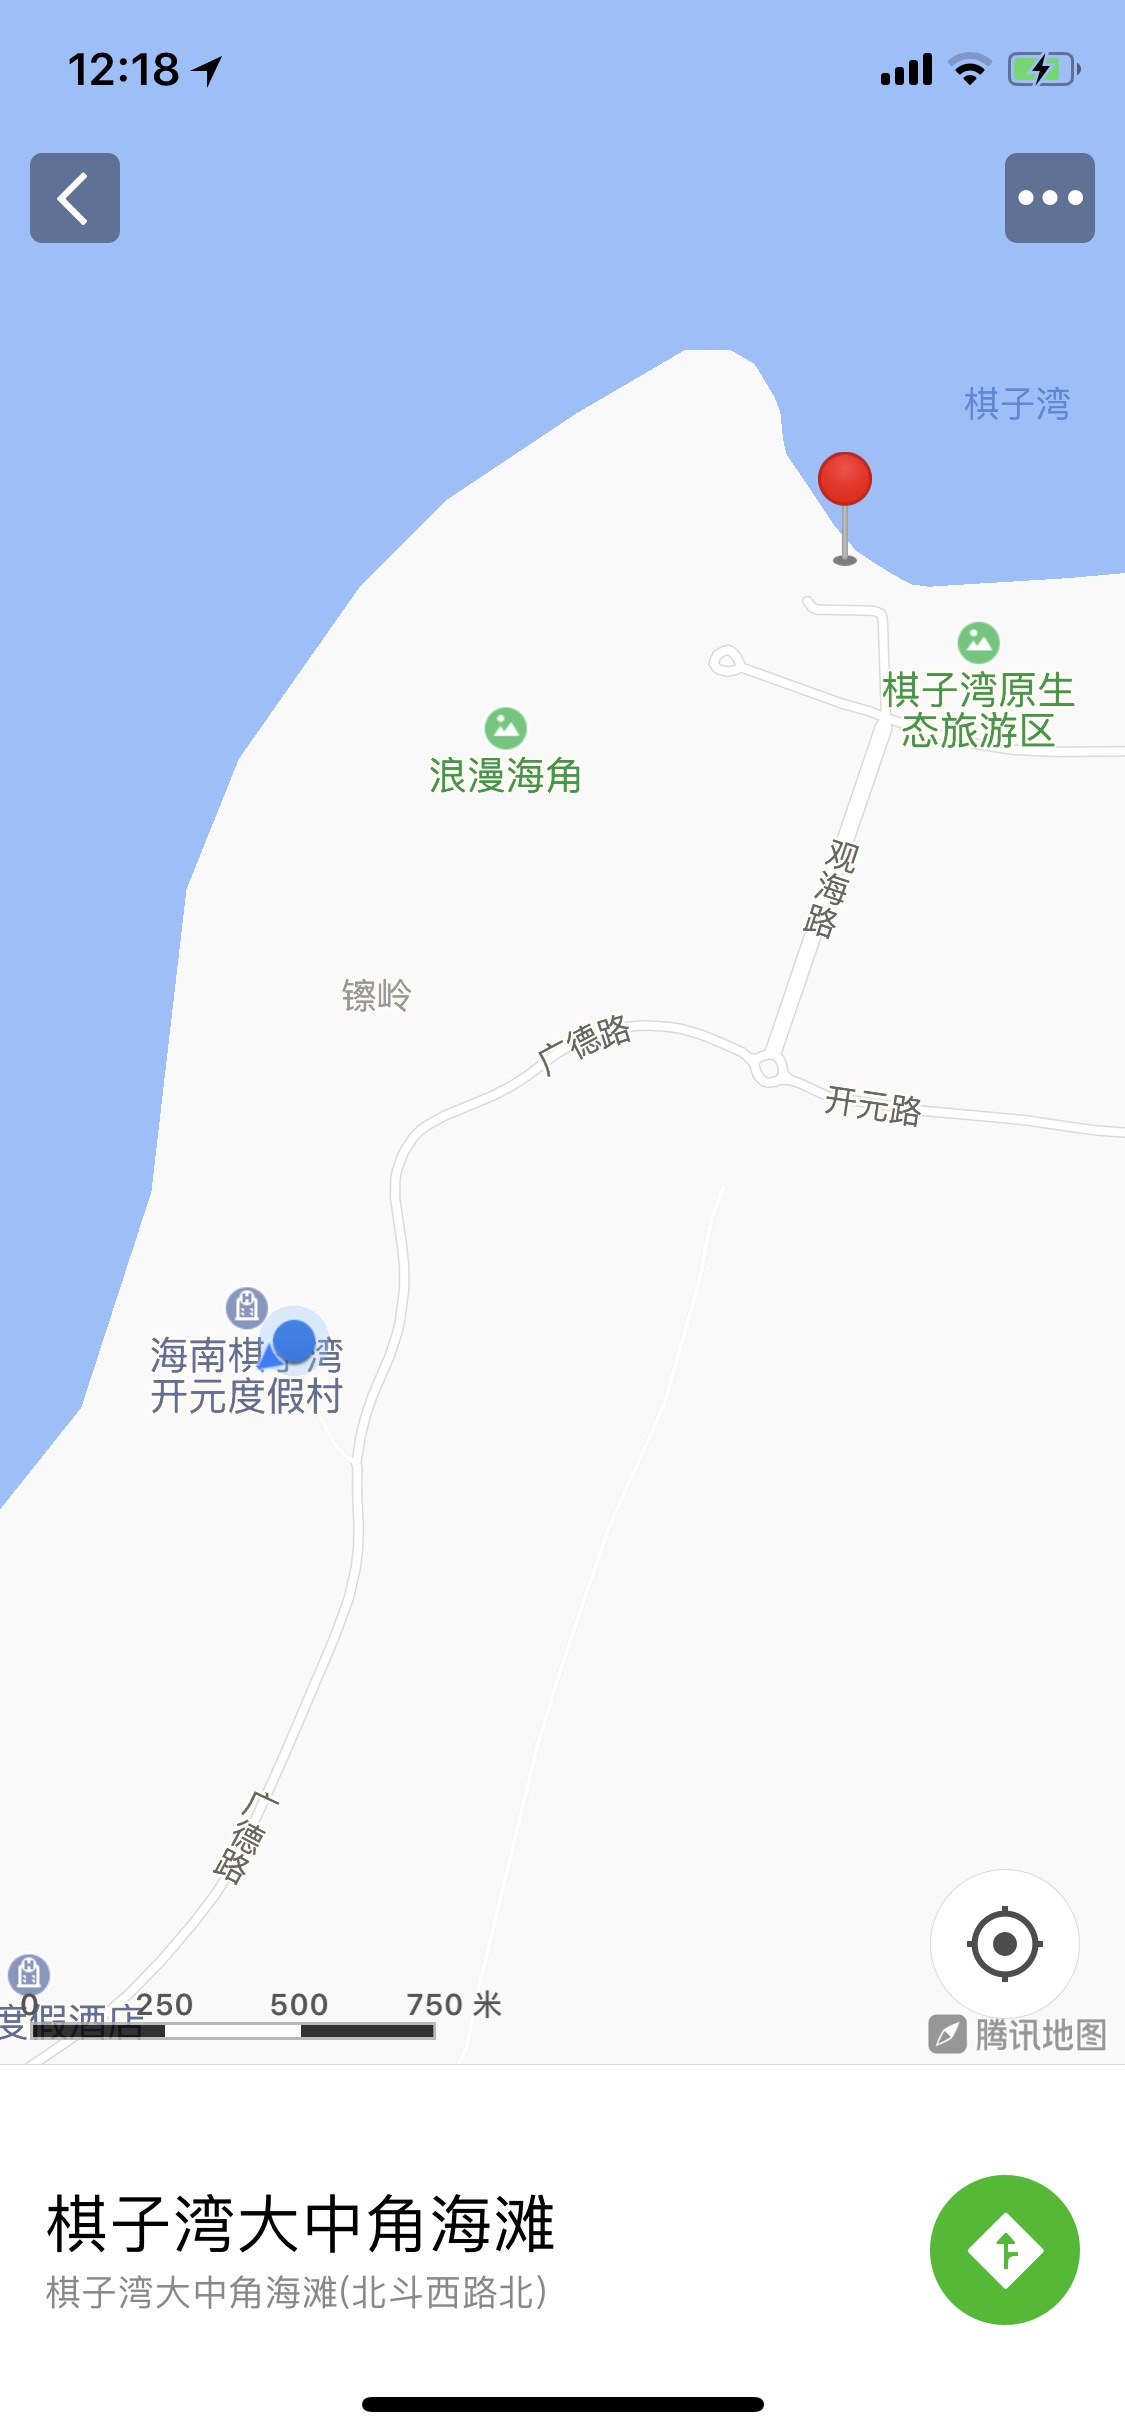 海南棋子湾地图图片